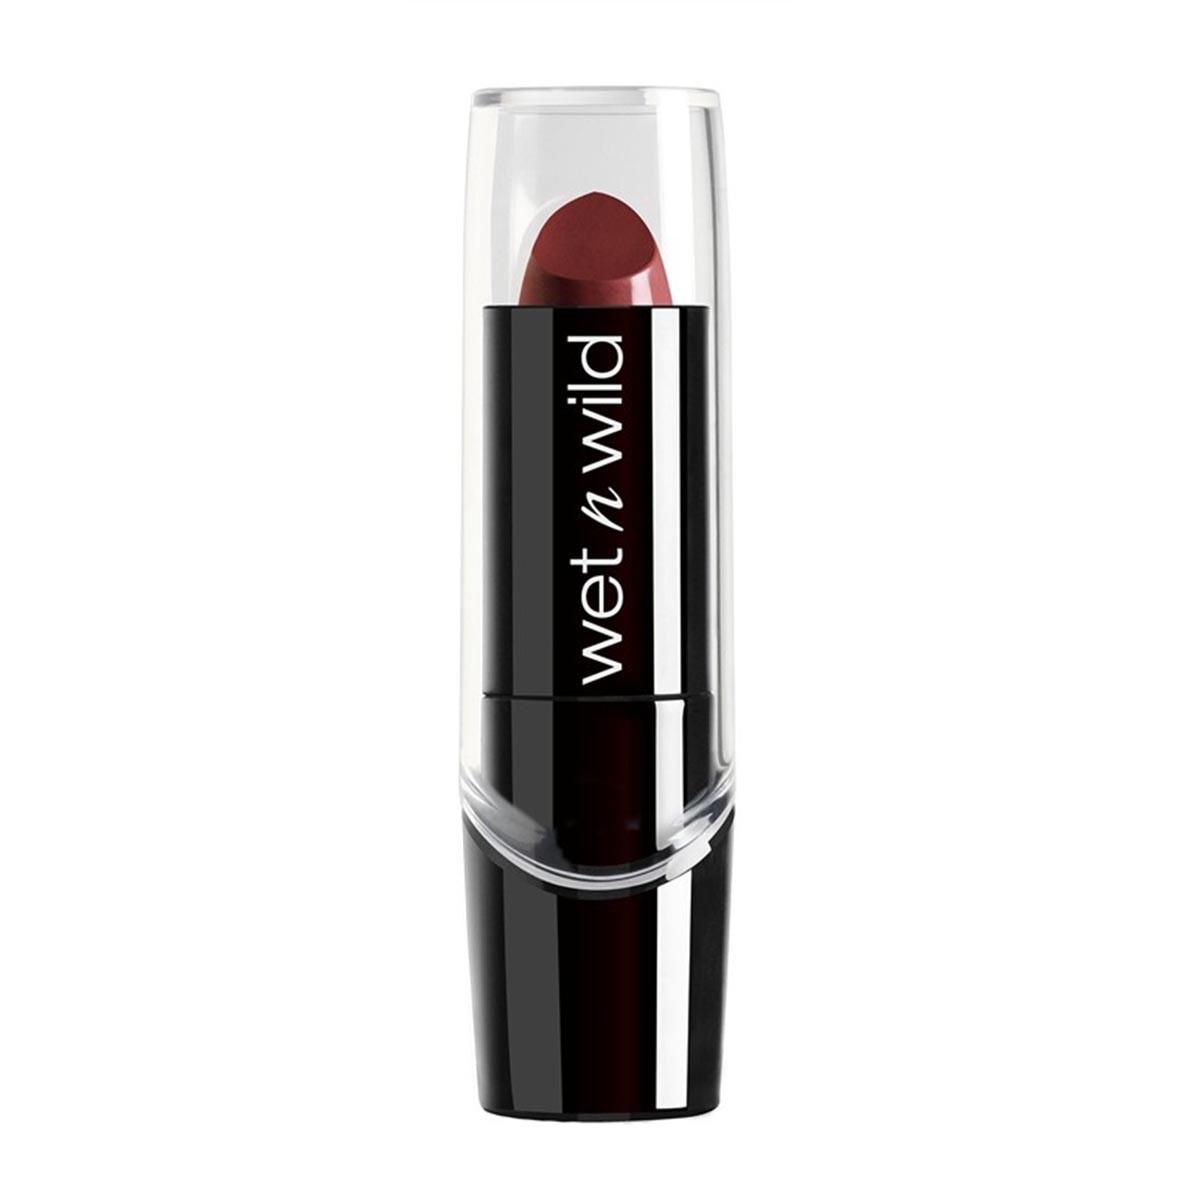 wet-n-wild-silk-finish-lipstick-dark-wine